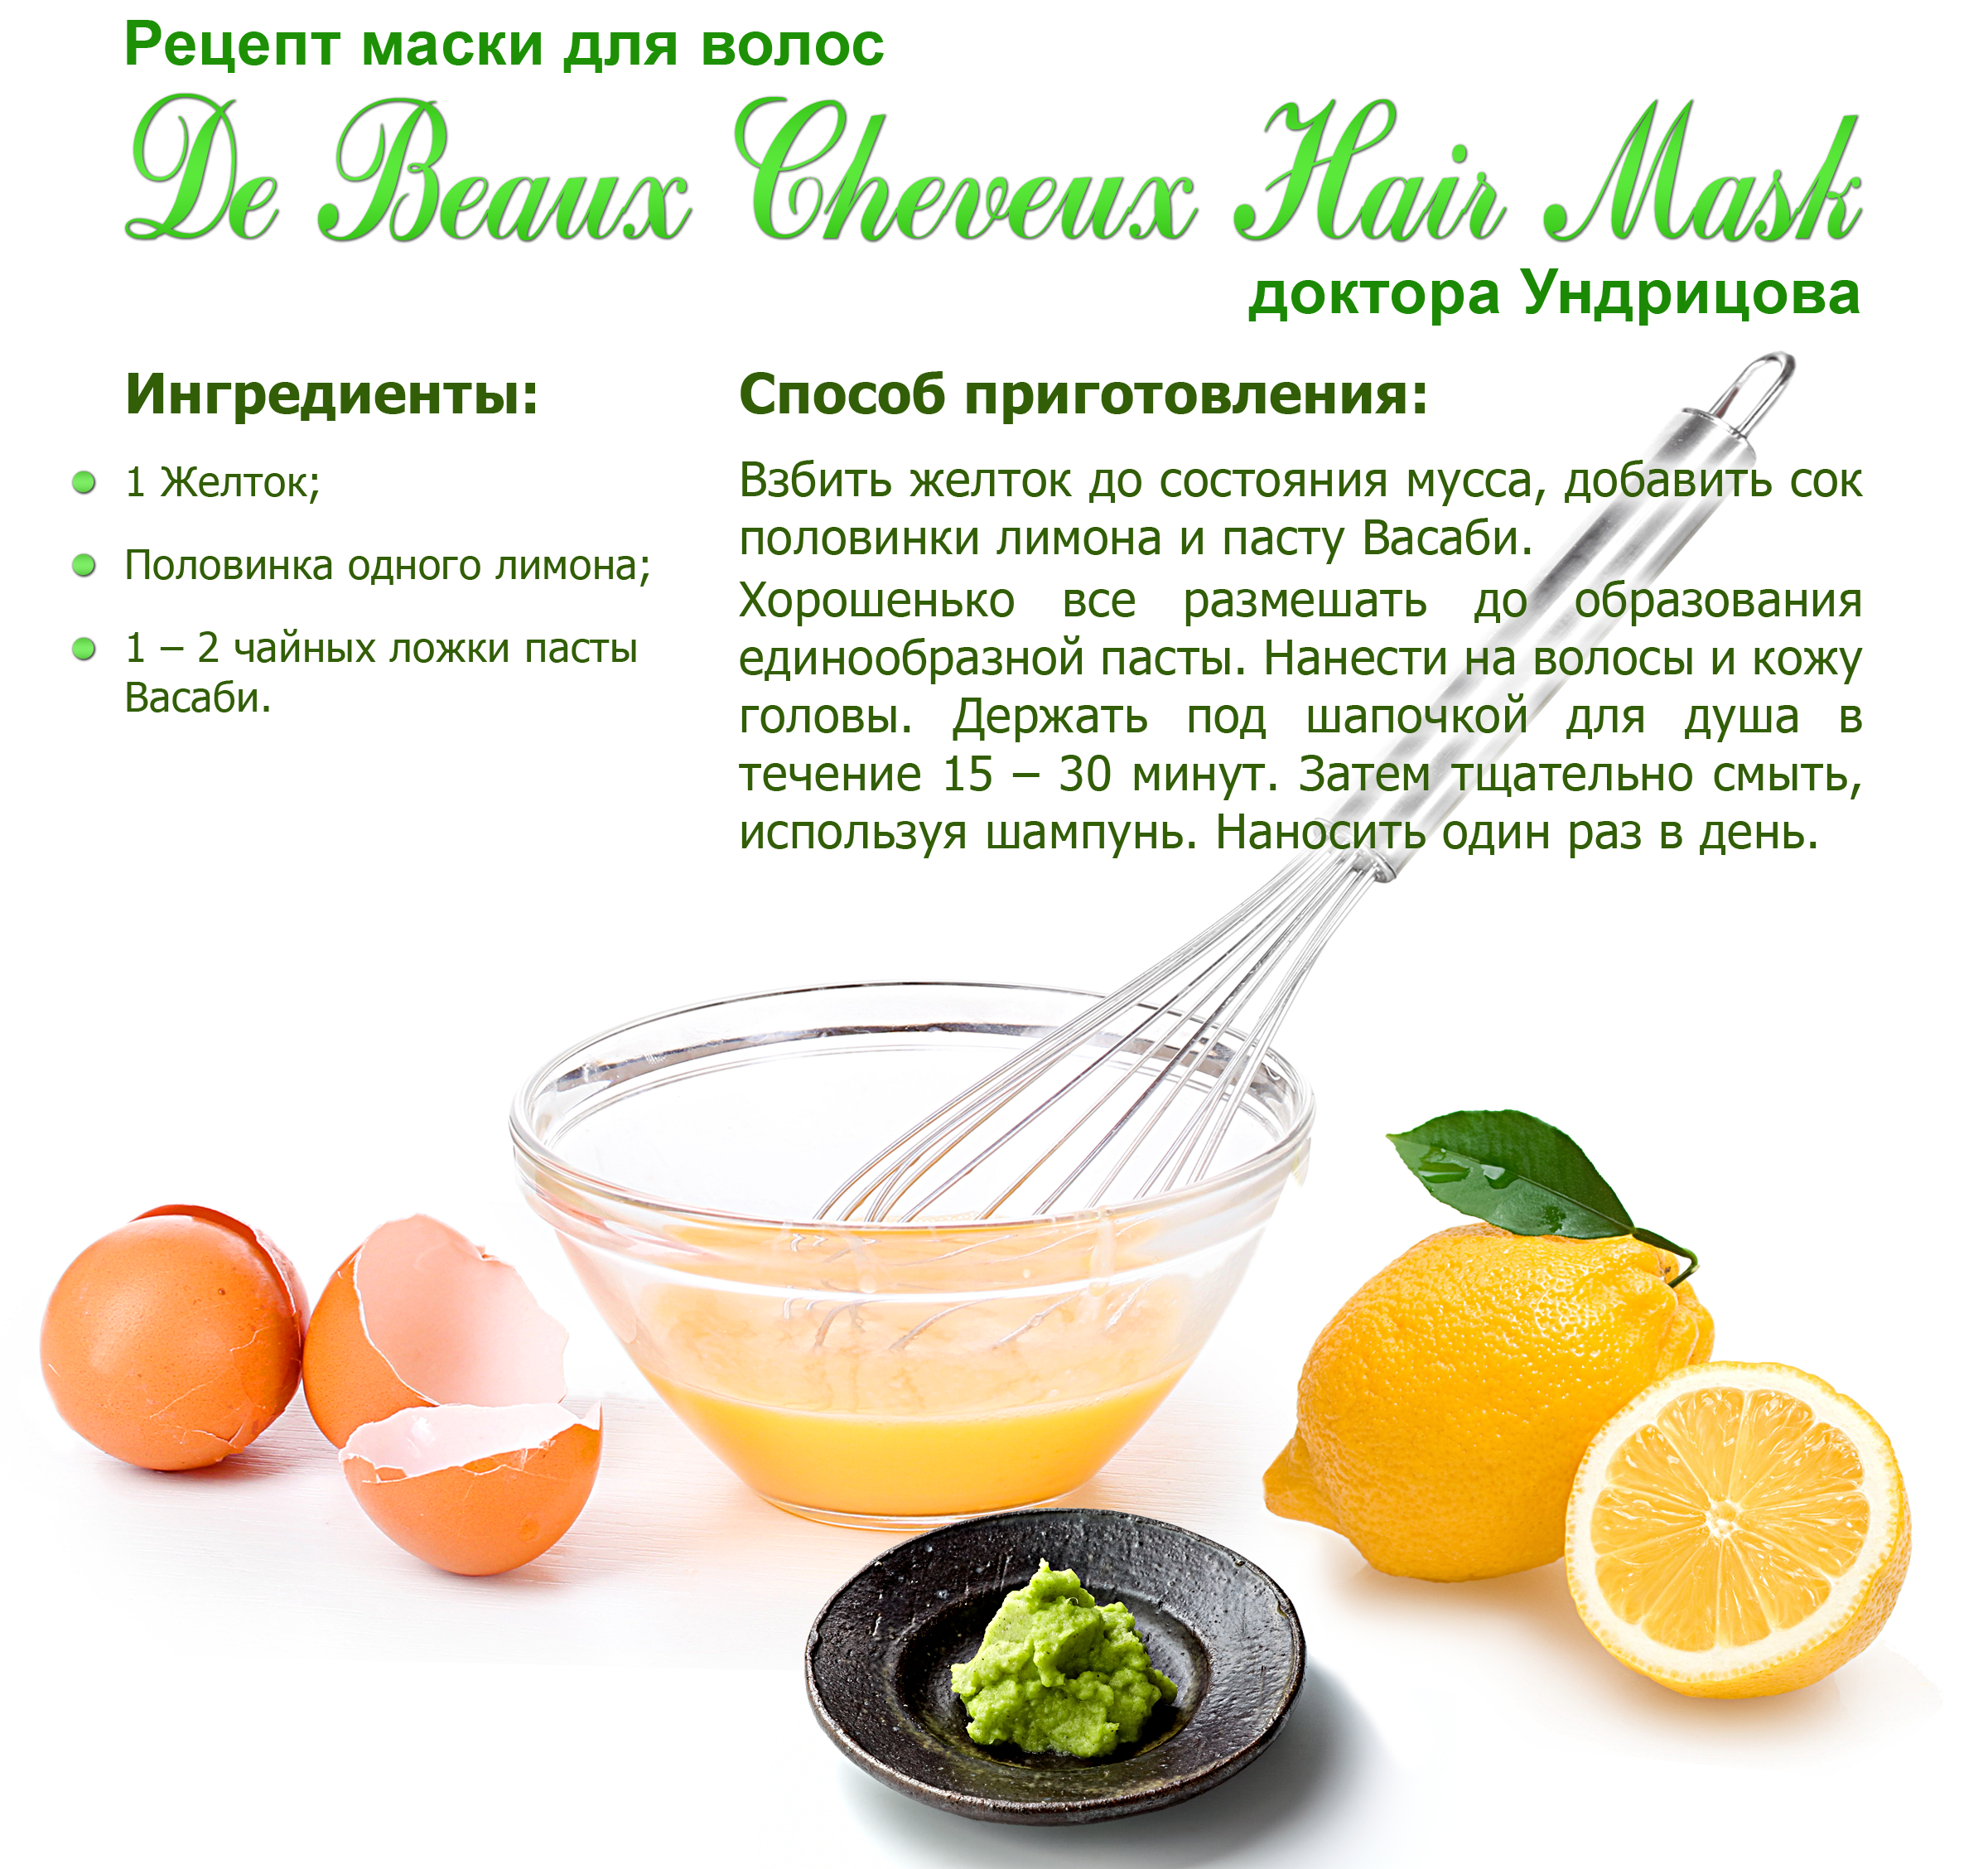 Правильная дрожжевая маска для волос в домашних условиях: отзывы, рецепты роста